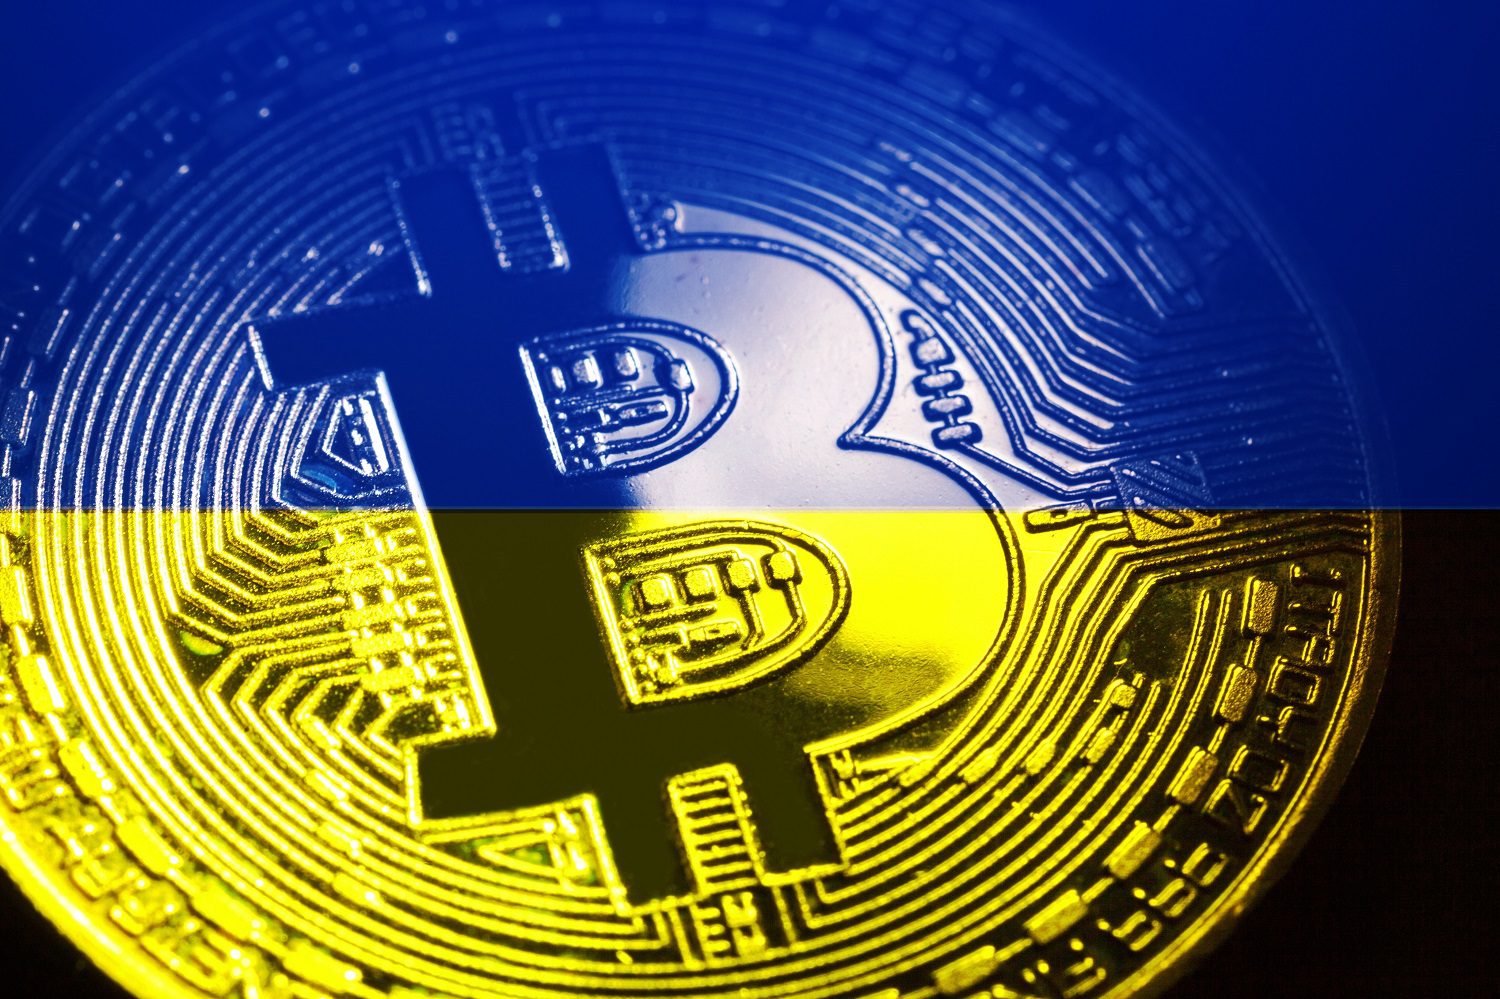 Un token destinado a representar a Bitcoin decorado con los colores de la bandera ucraniana.